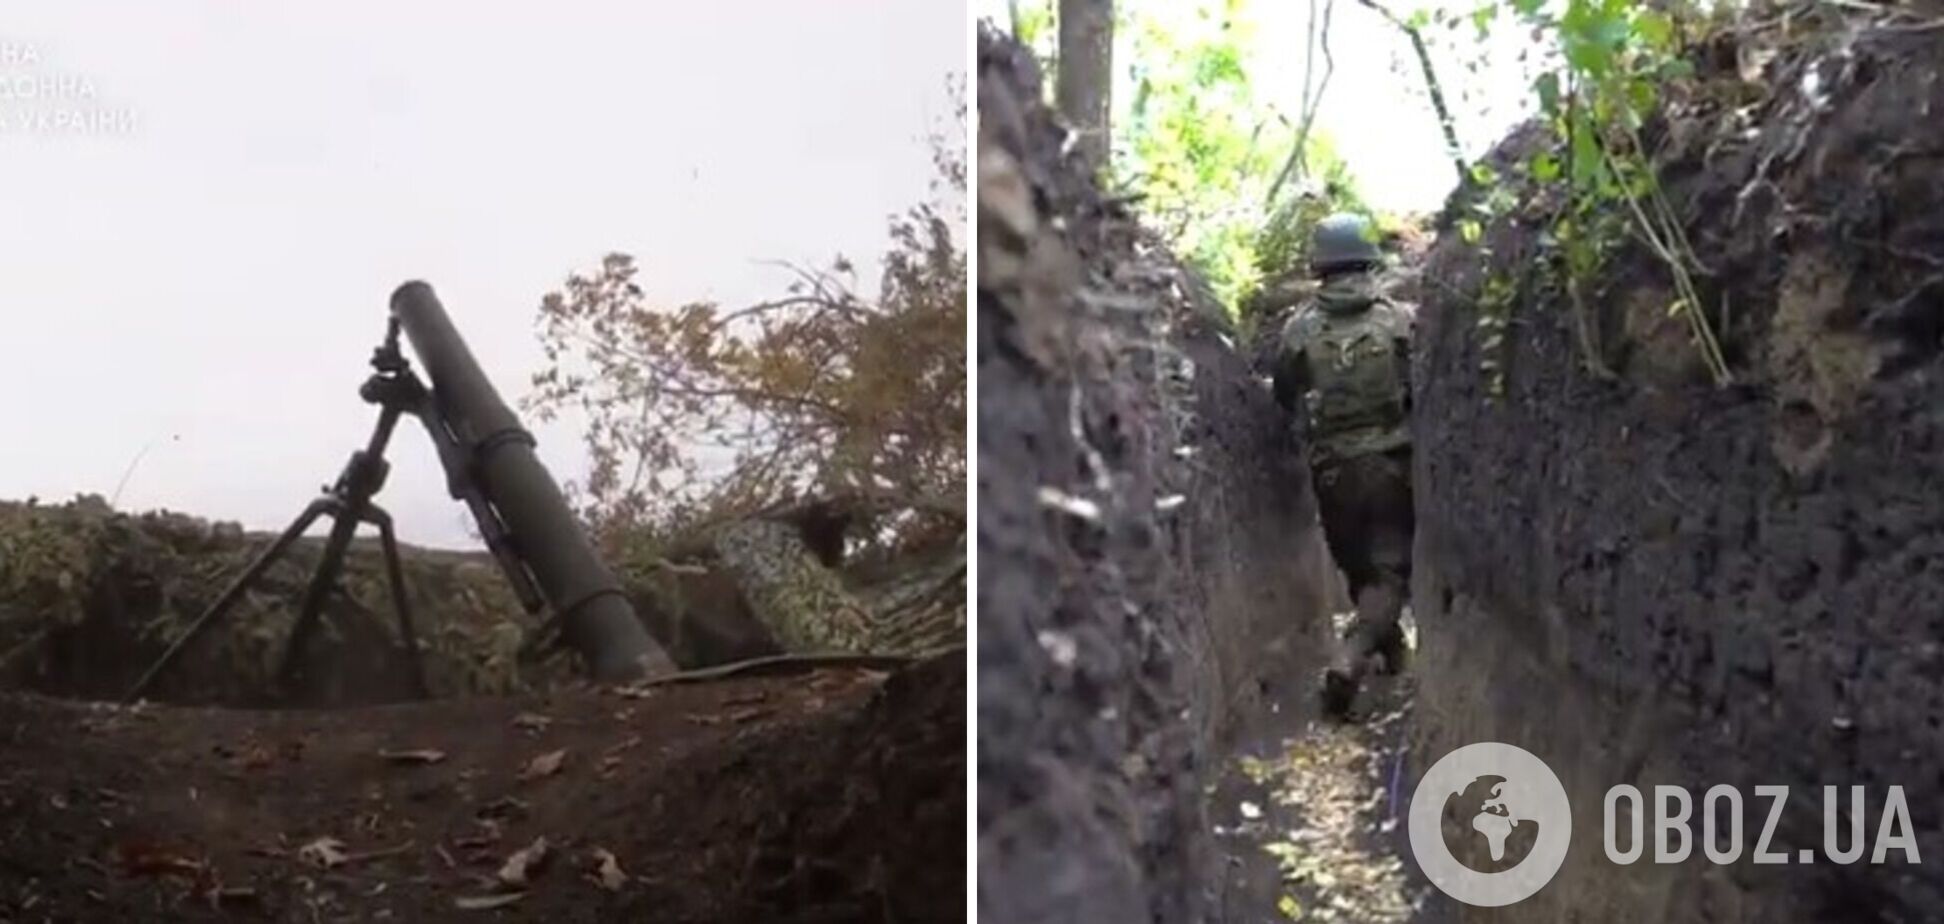 Прикрытие для пехоты: украинские пограничники показали, как их минометные расчеты уничтожают врага. Видео